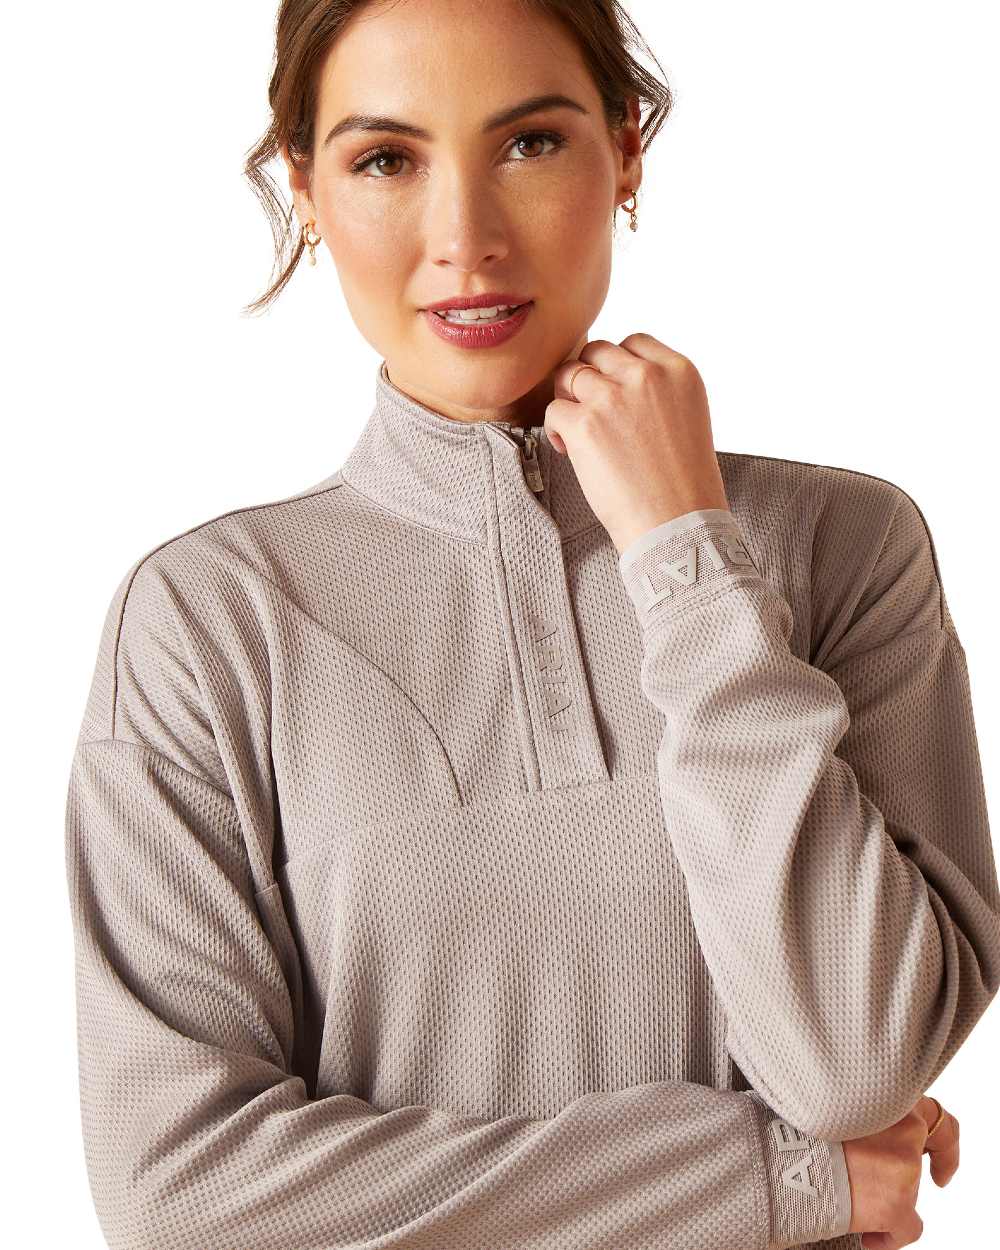 Zinc Coloured Ariat Womens Breathe Half Zip Sweatshirt On A White Background 